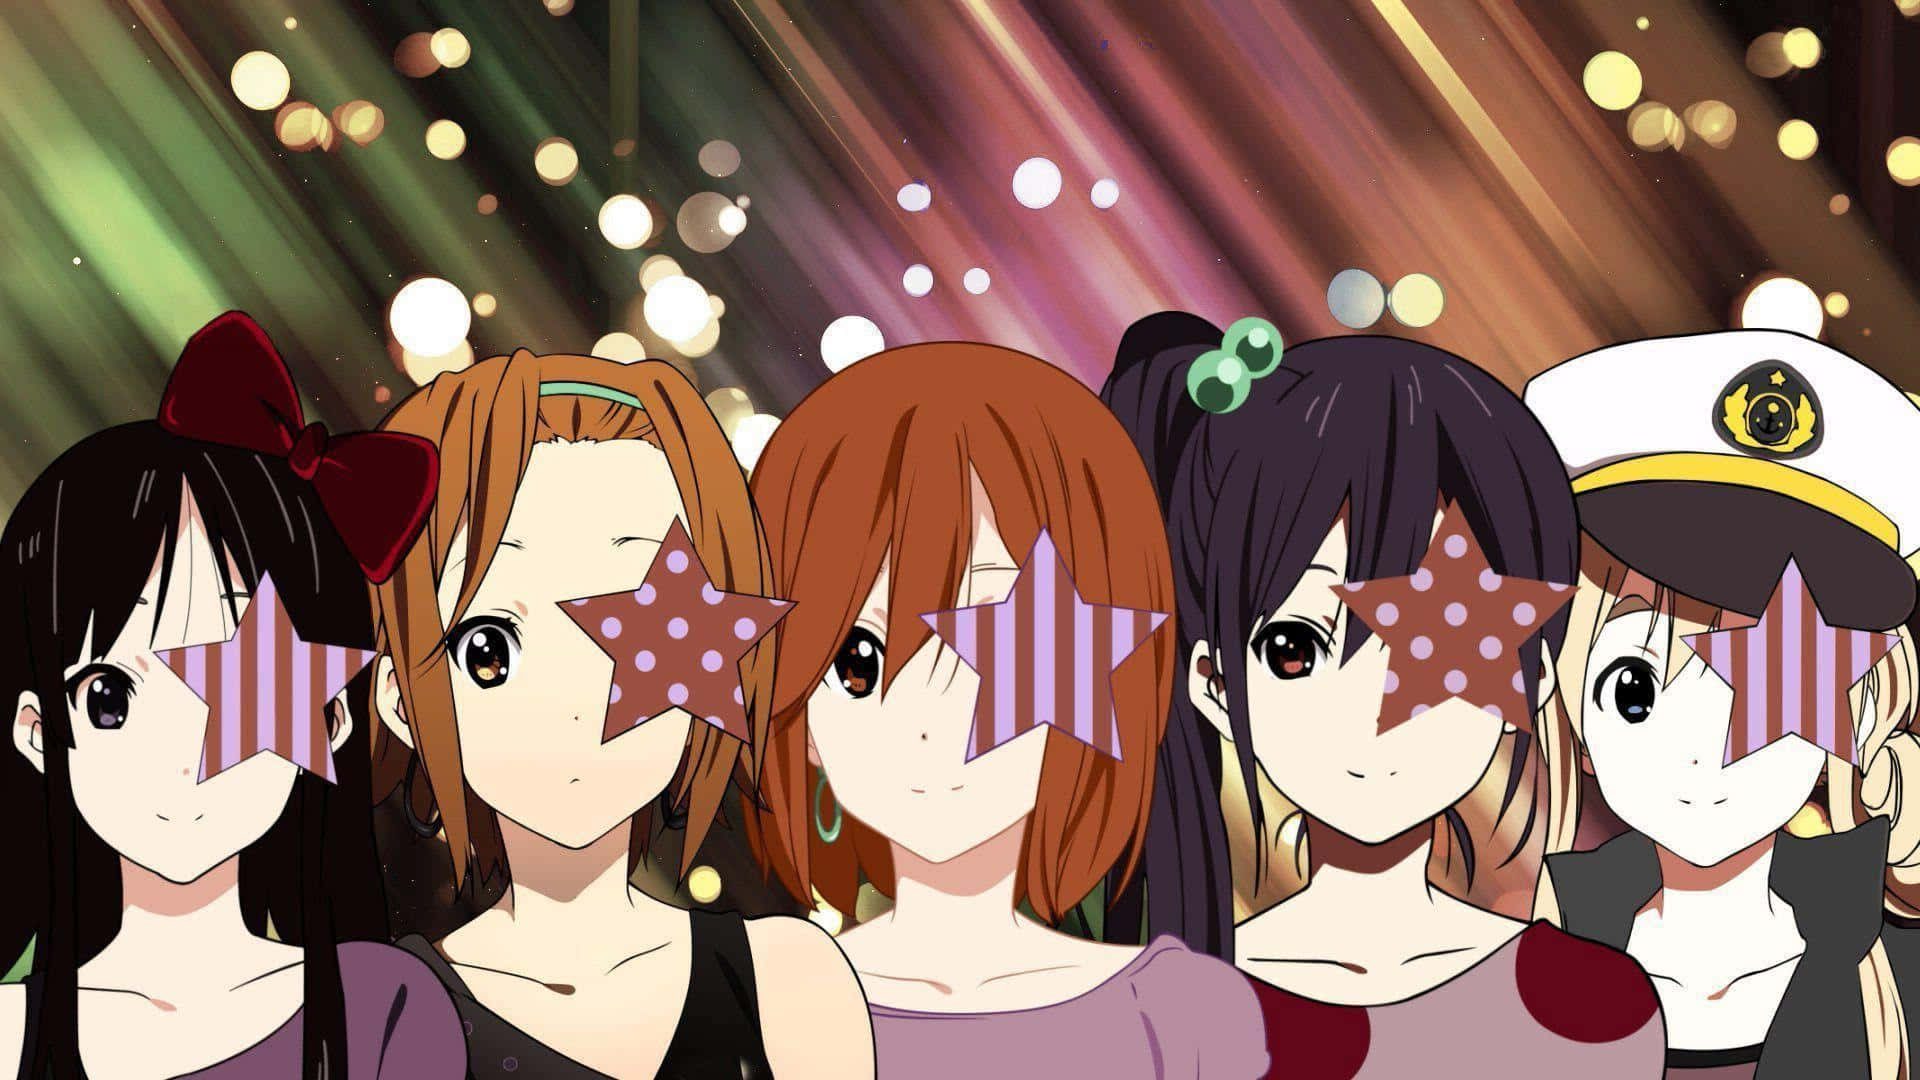 Engruppe Anime Piger Med Stjerner I Deres Ansigter.